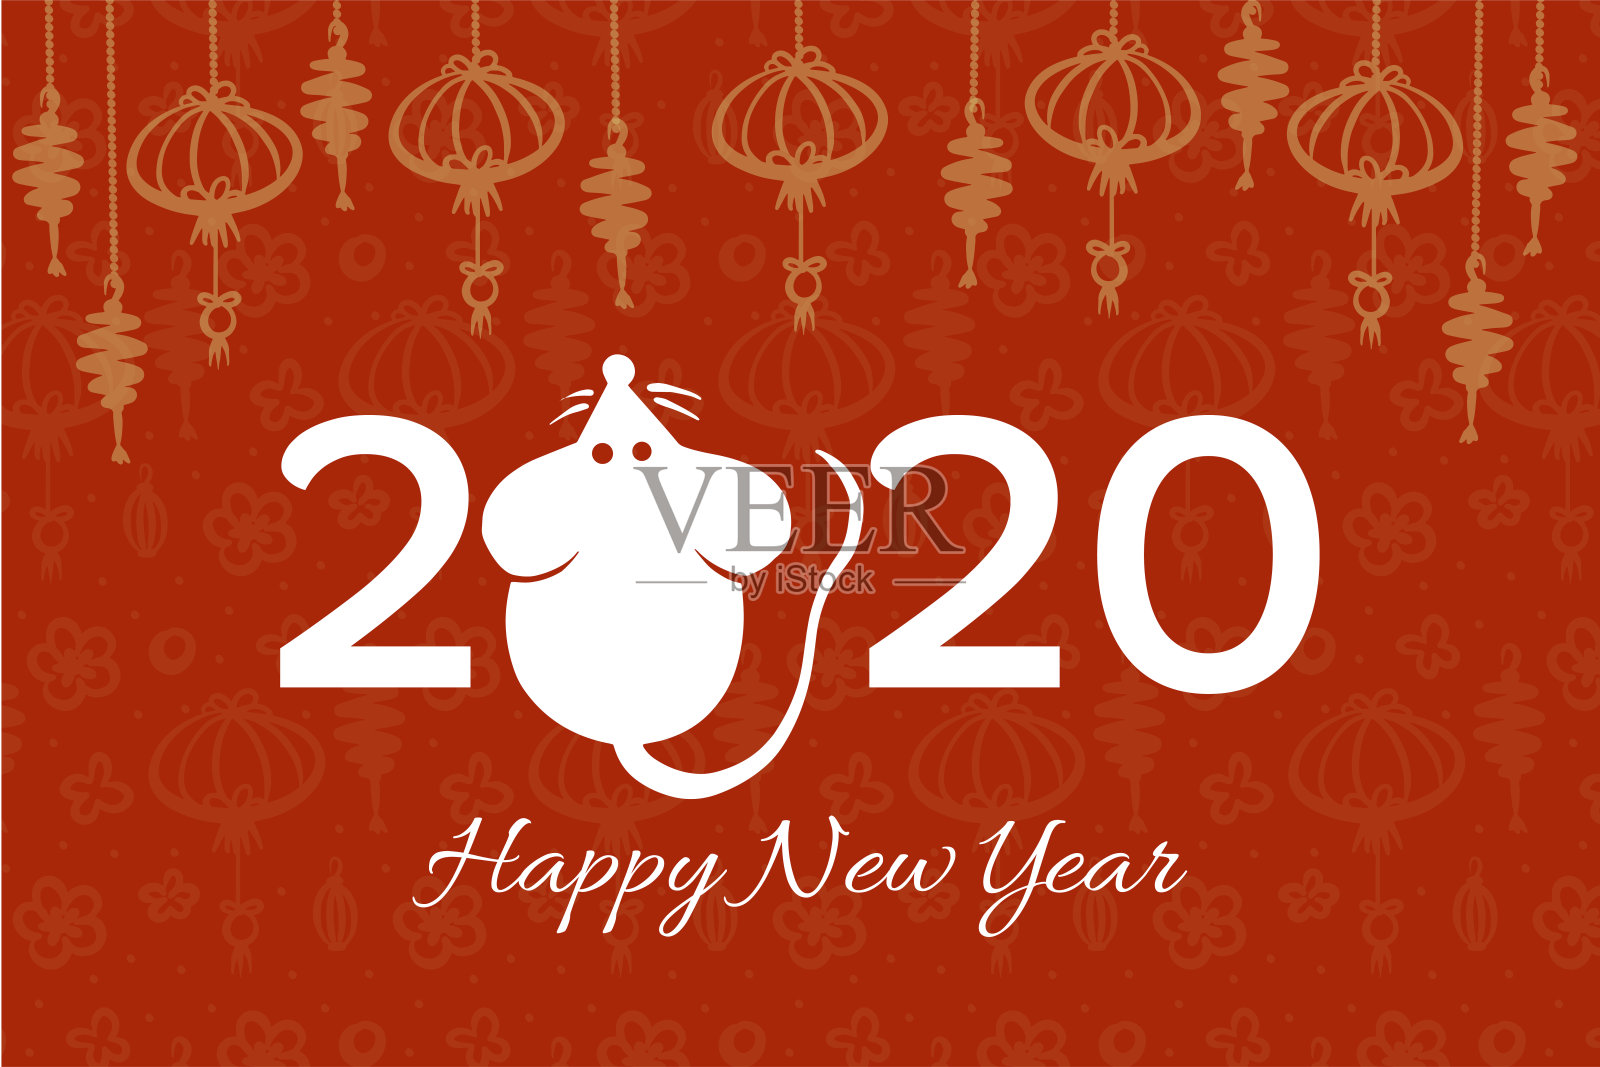 矢量中国新年贺卡与手绘鼠标和中国风格的闪光灯和动机图案在红色，插图为圣诞和新年设计，象征2020在中国历法设计模板素材